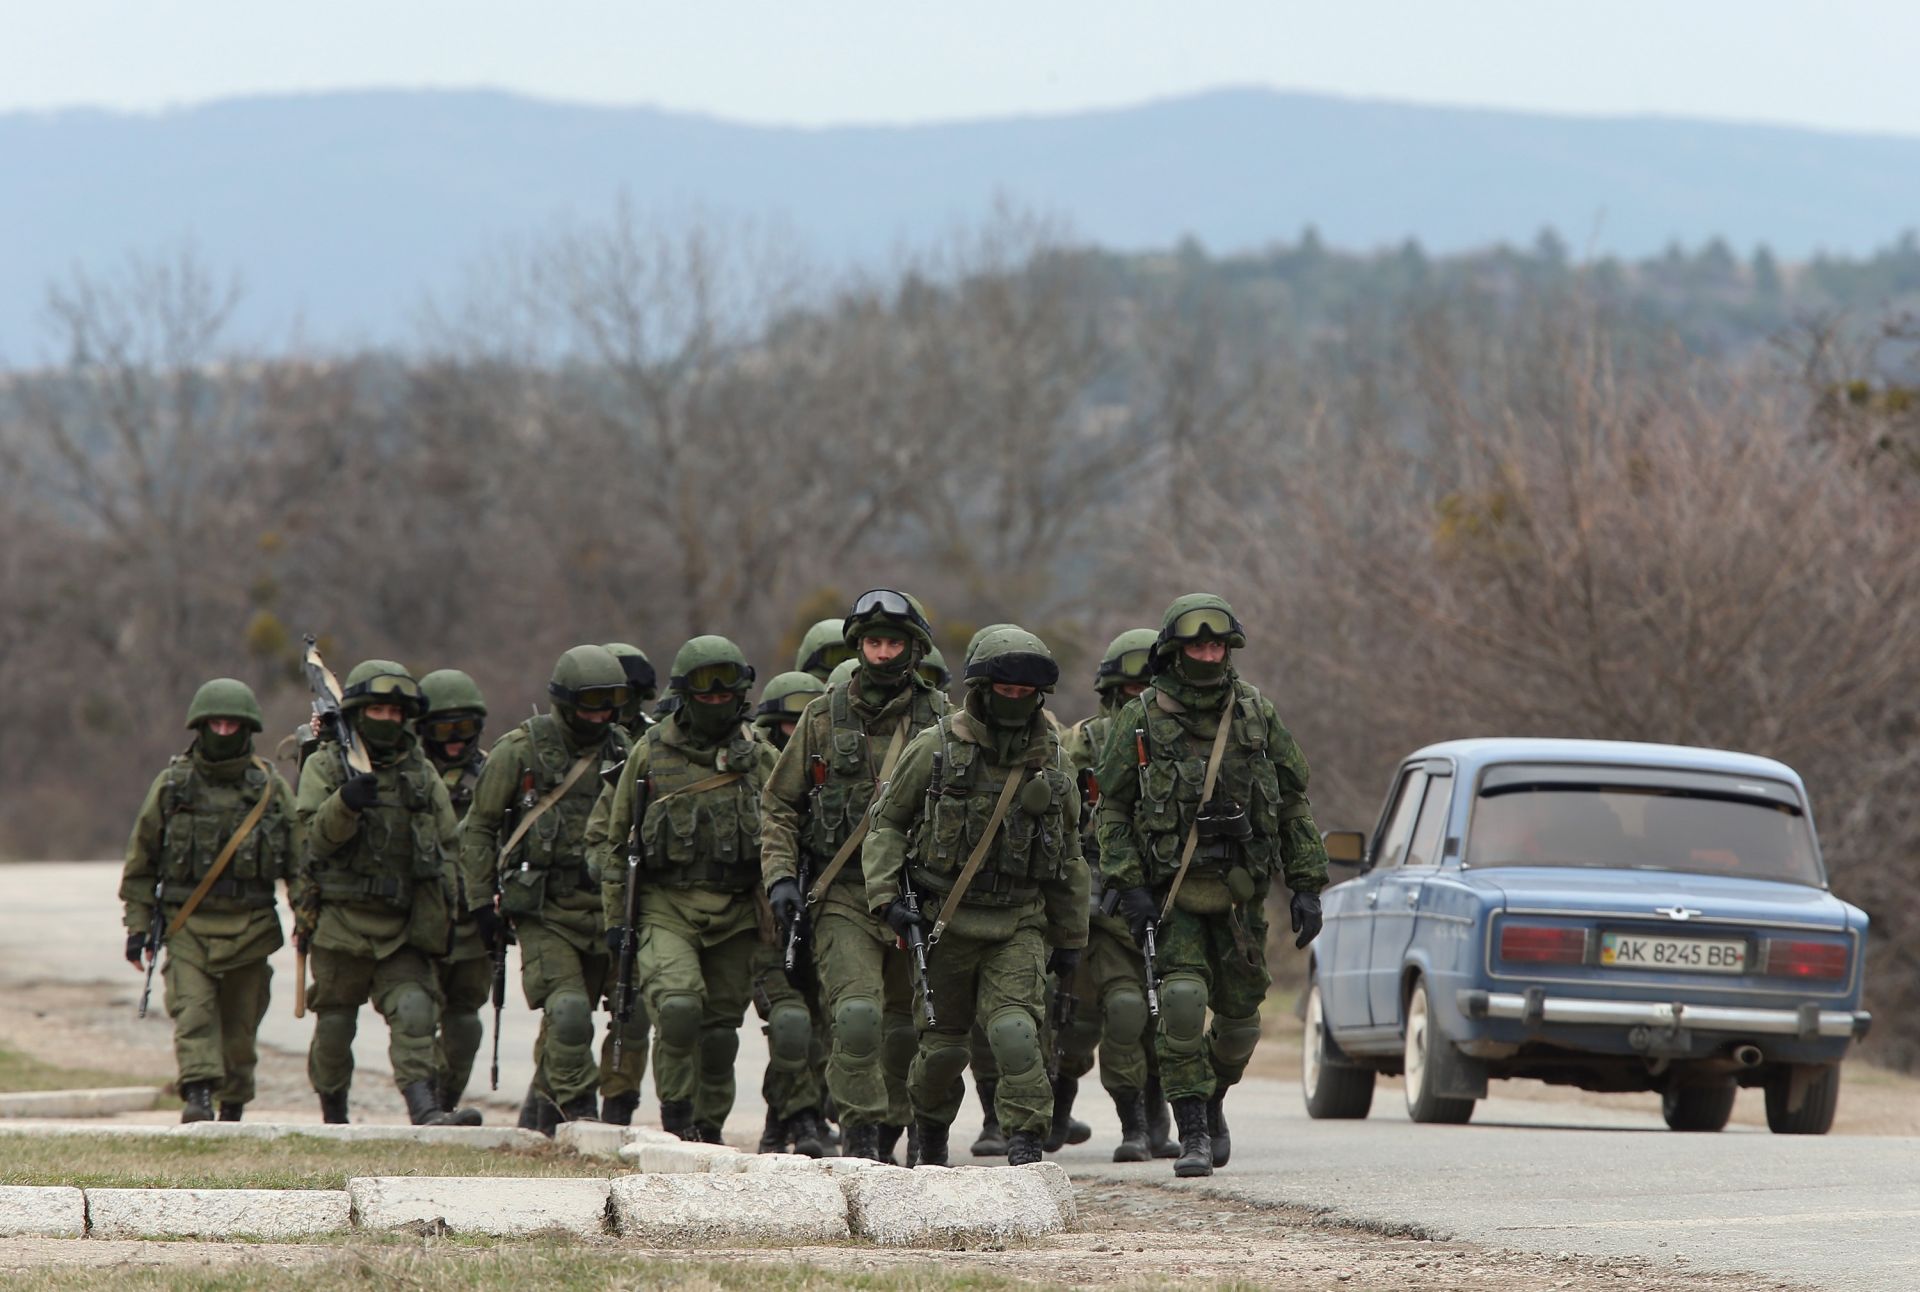 Войници, които бяха сред няколкостотин души, заемащи позиции около украинска военна база в периферията на базата в Крим на 2 март 2014 г. в Перевале, Украйна